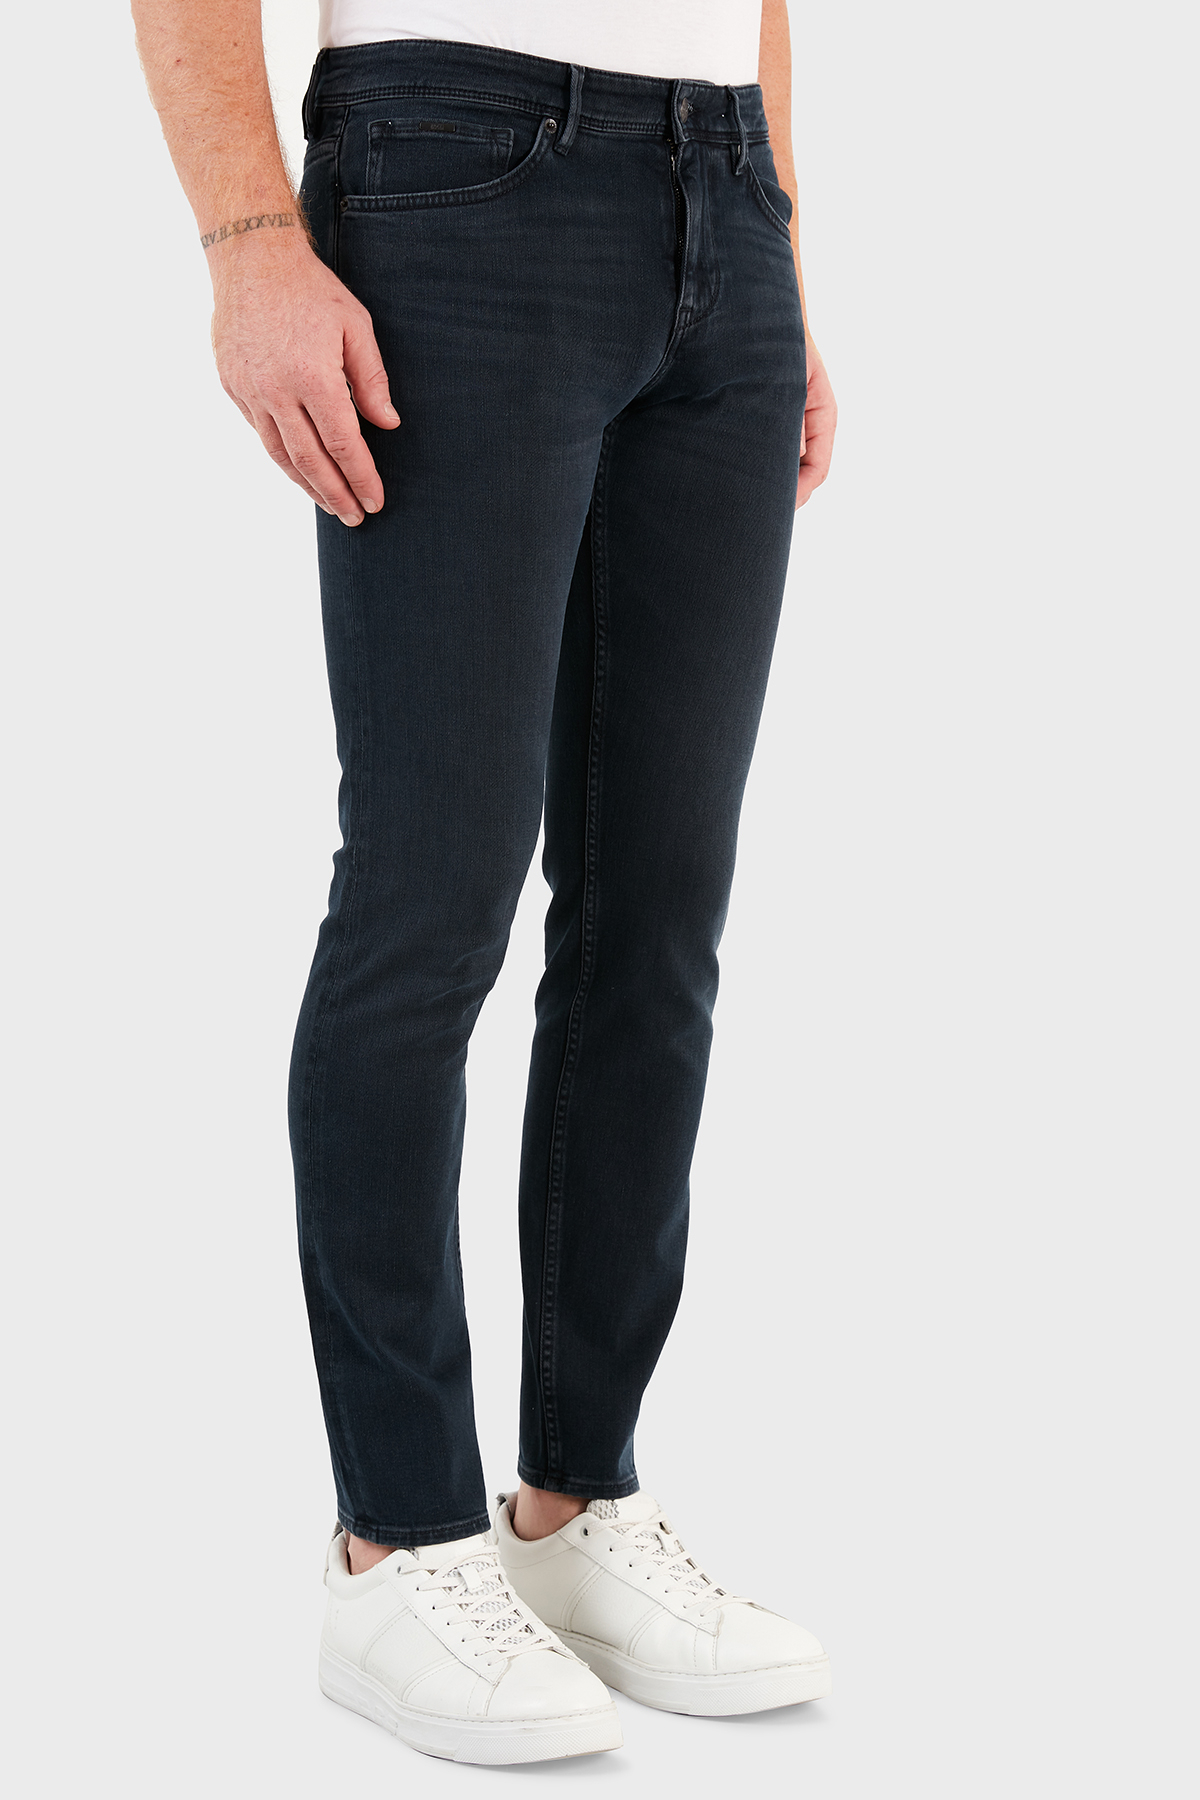 Hugo Boss Pamuklu Extra Slim Fit Jeans Erkek Kot Pantolon 50458140 426 LACİVERT